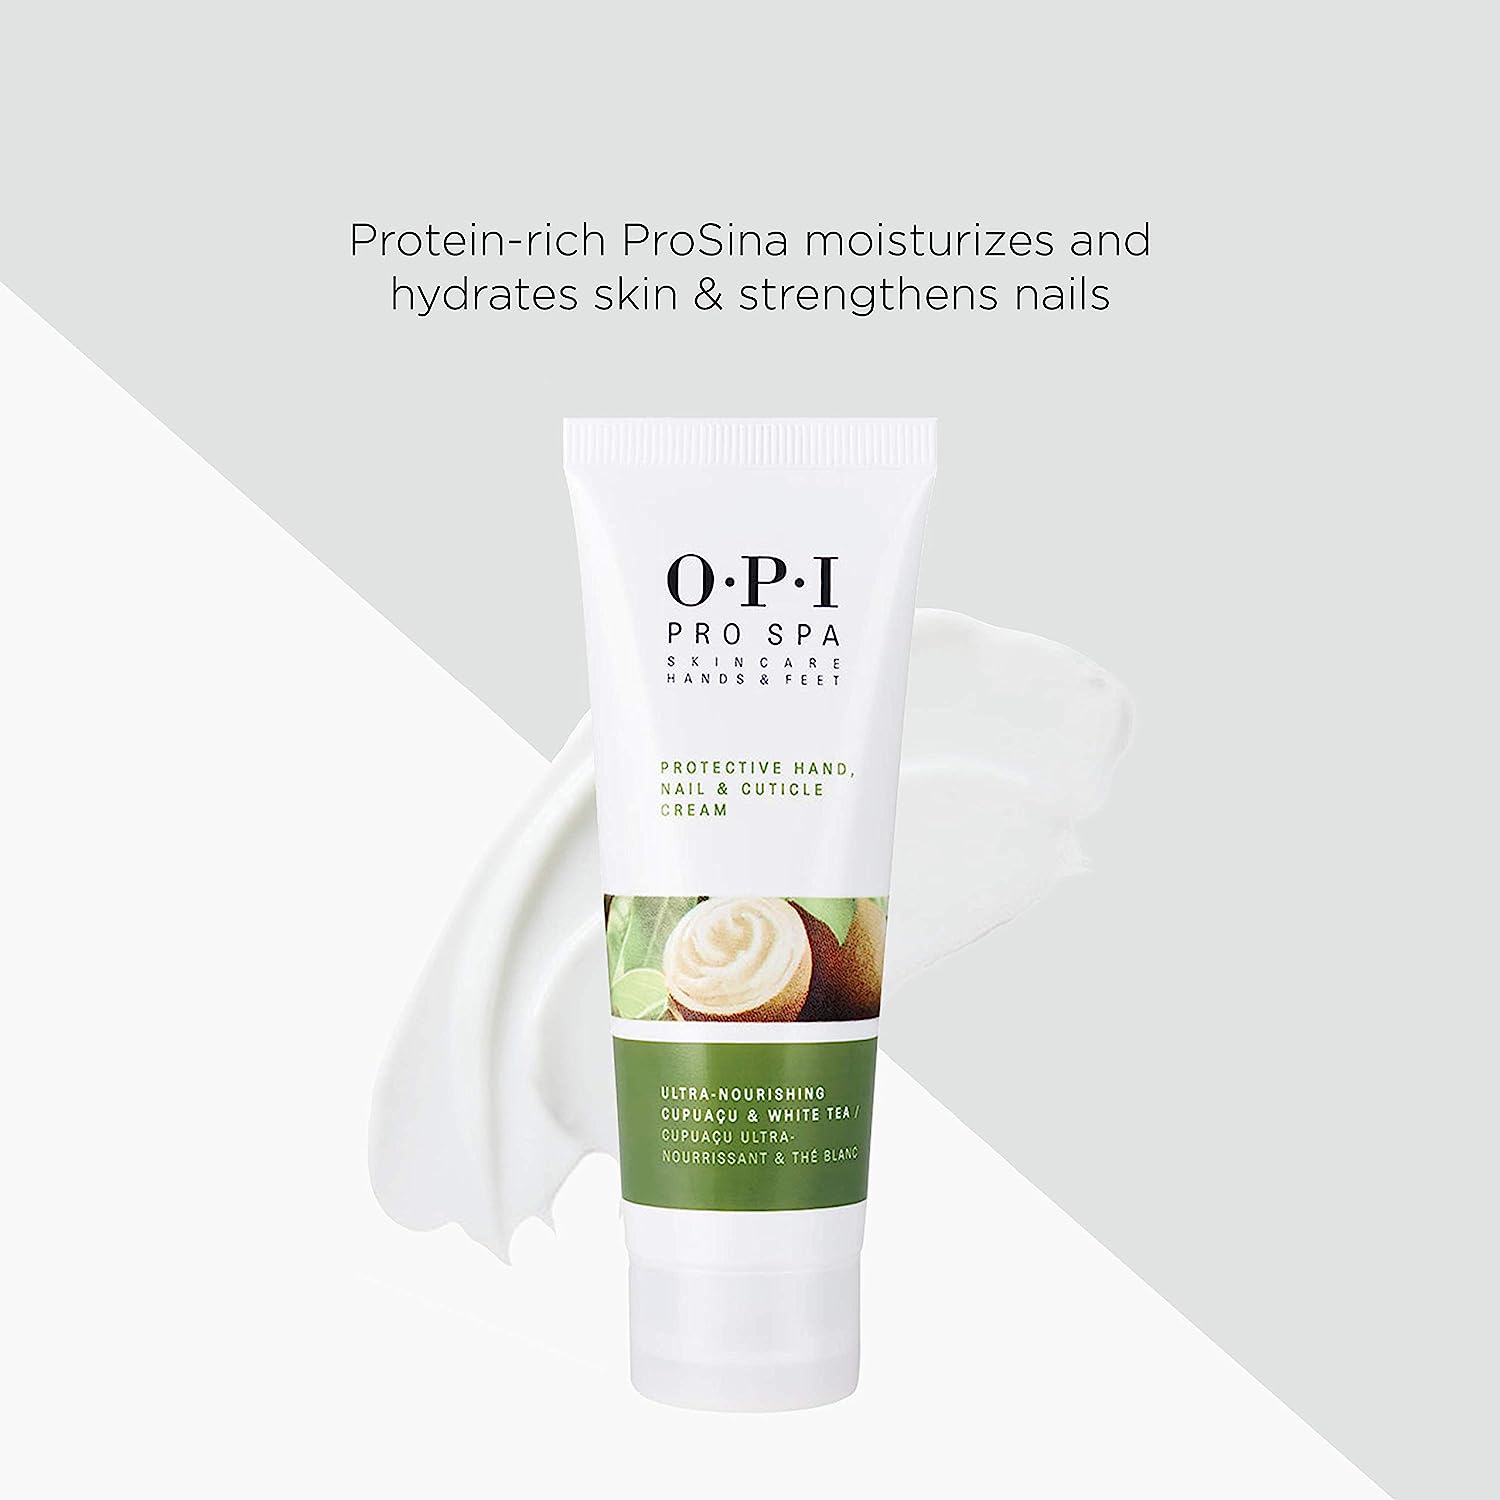 O.P.I ProSpa Protective Hand Nail & Cuticle Cream (236 ml) Beautiful